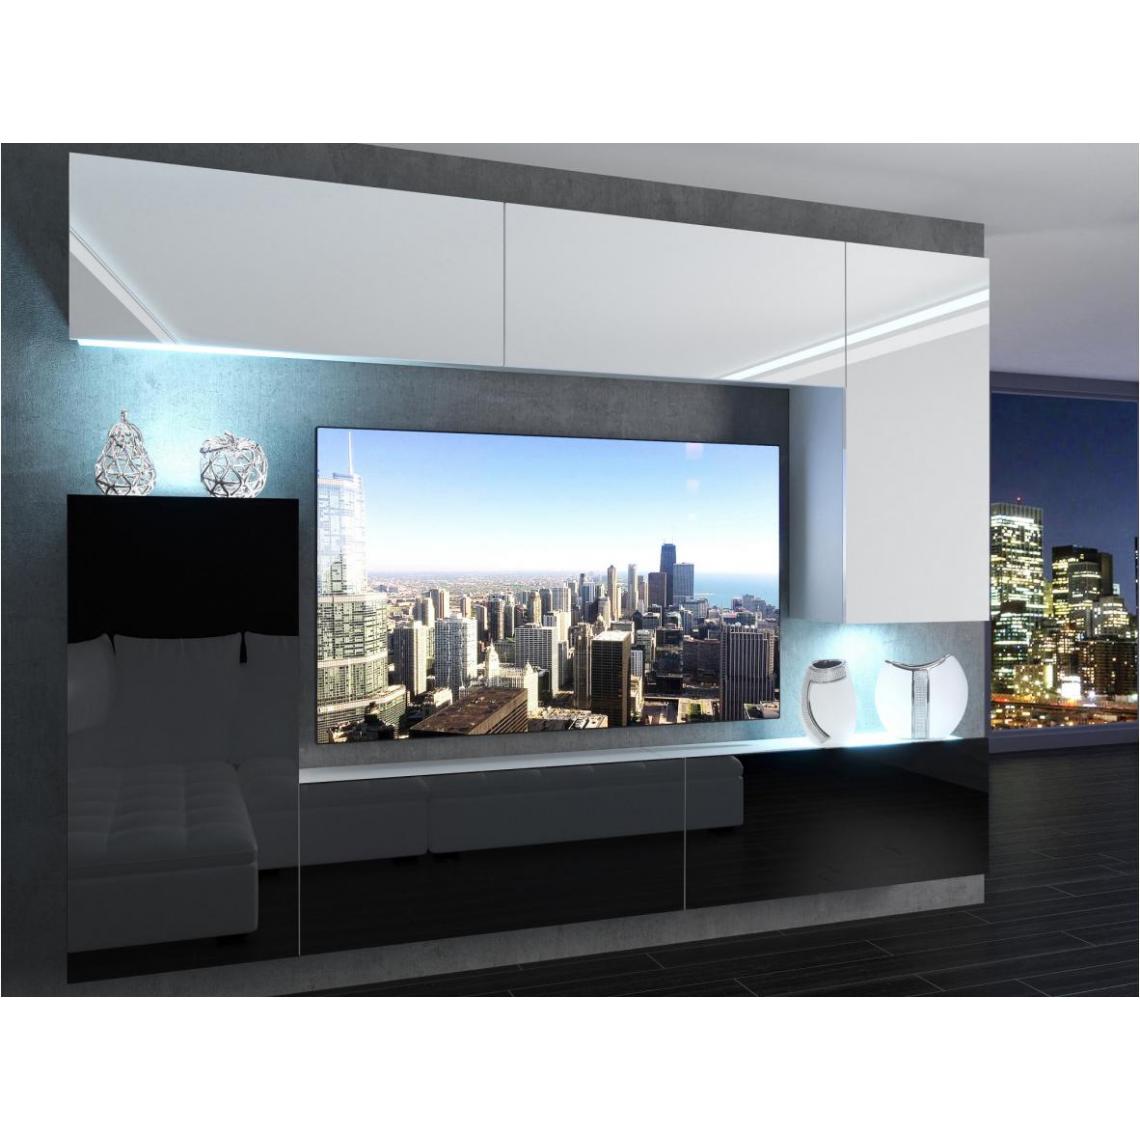 Hucoco - SLIDE - Ensemble meubles TV + LED - Unité murale moderne - Largeur 250 cm - Mur TV à suspendre - Finition gloss - Blanc/Noir - Meubles TV, Hi-Fi